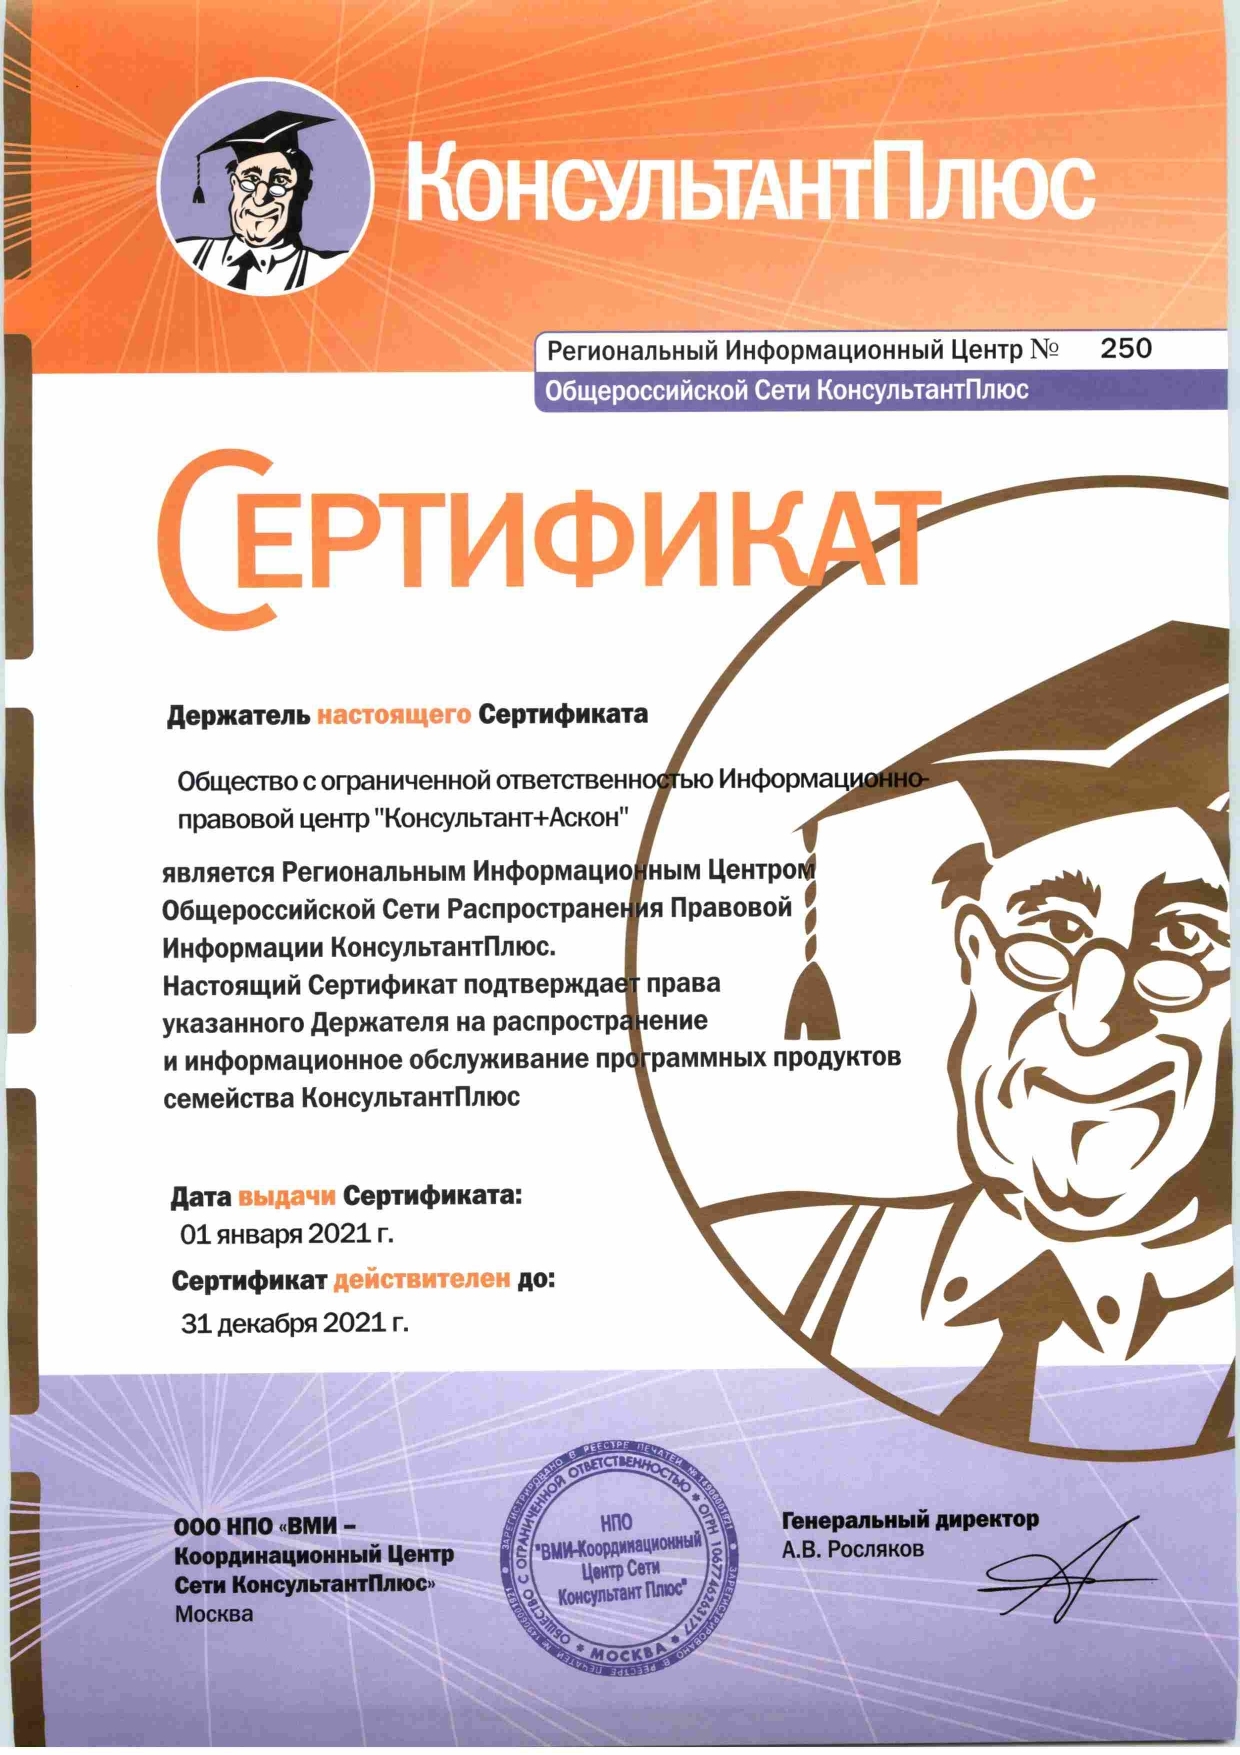 Сертификат КонсультантПлюс (РИЦ 250)